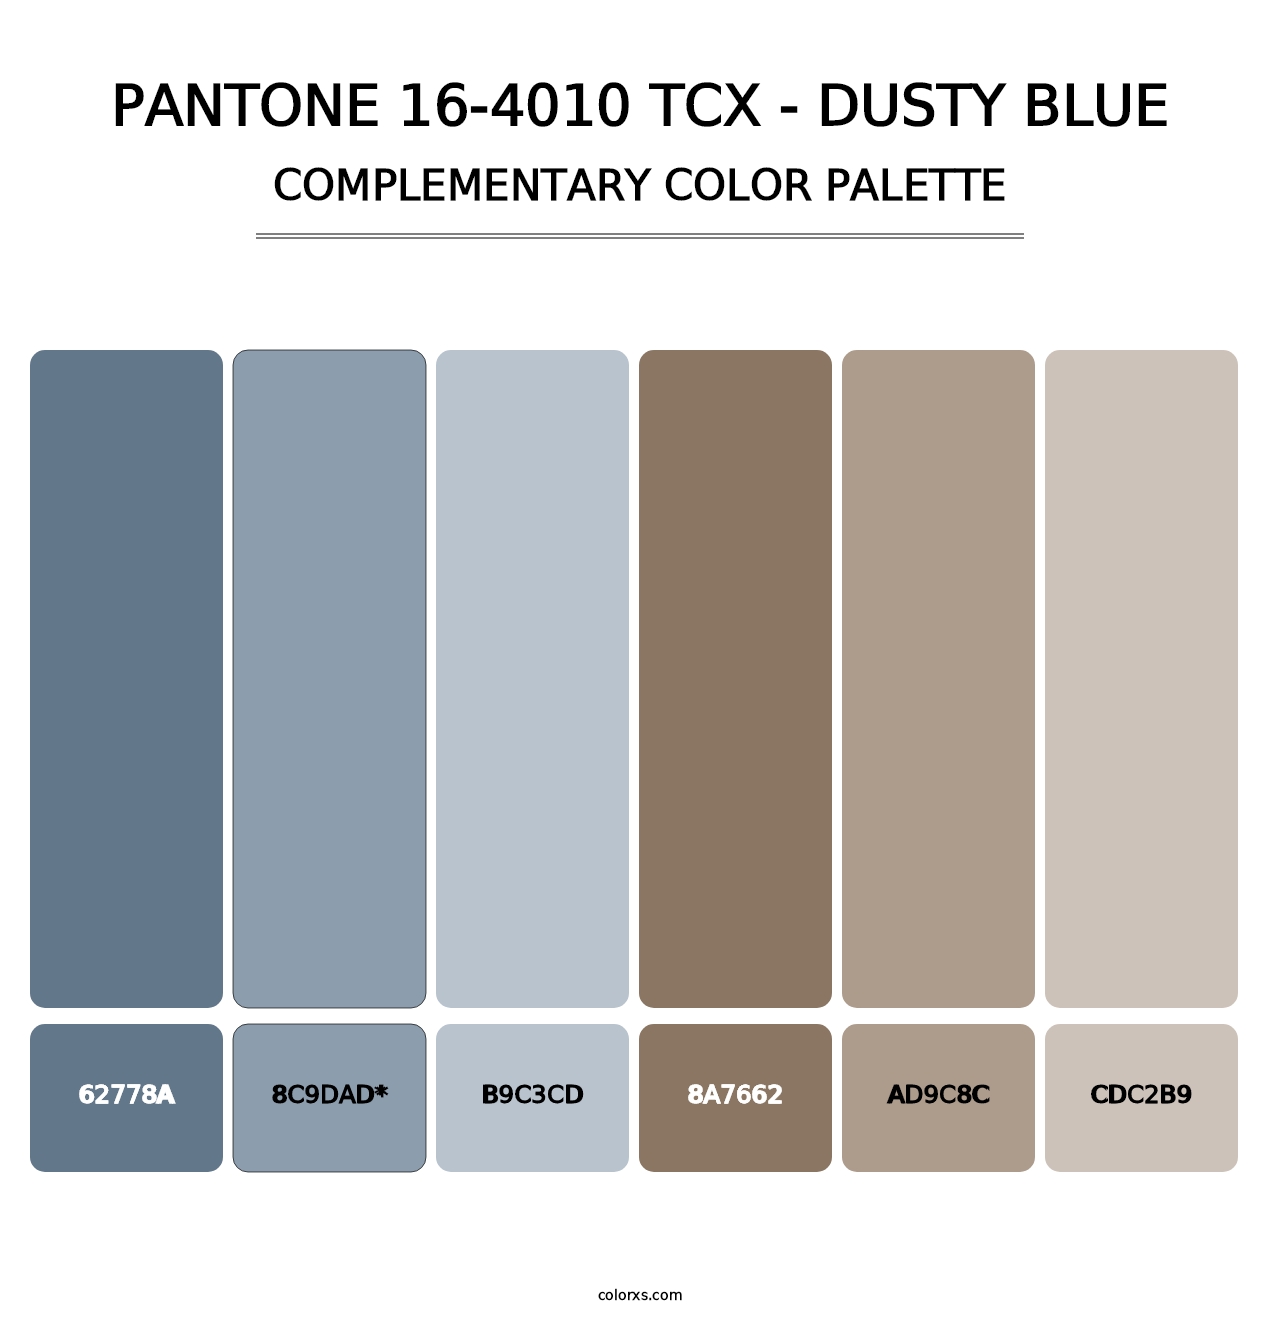 PANTONE 16-4010 TCX - Dusty Blue - Complementary Color Palette